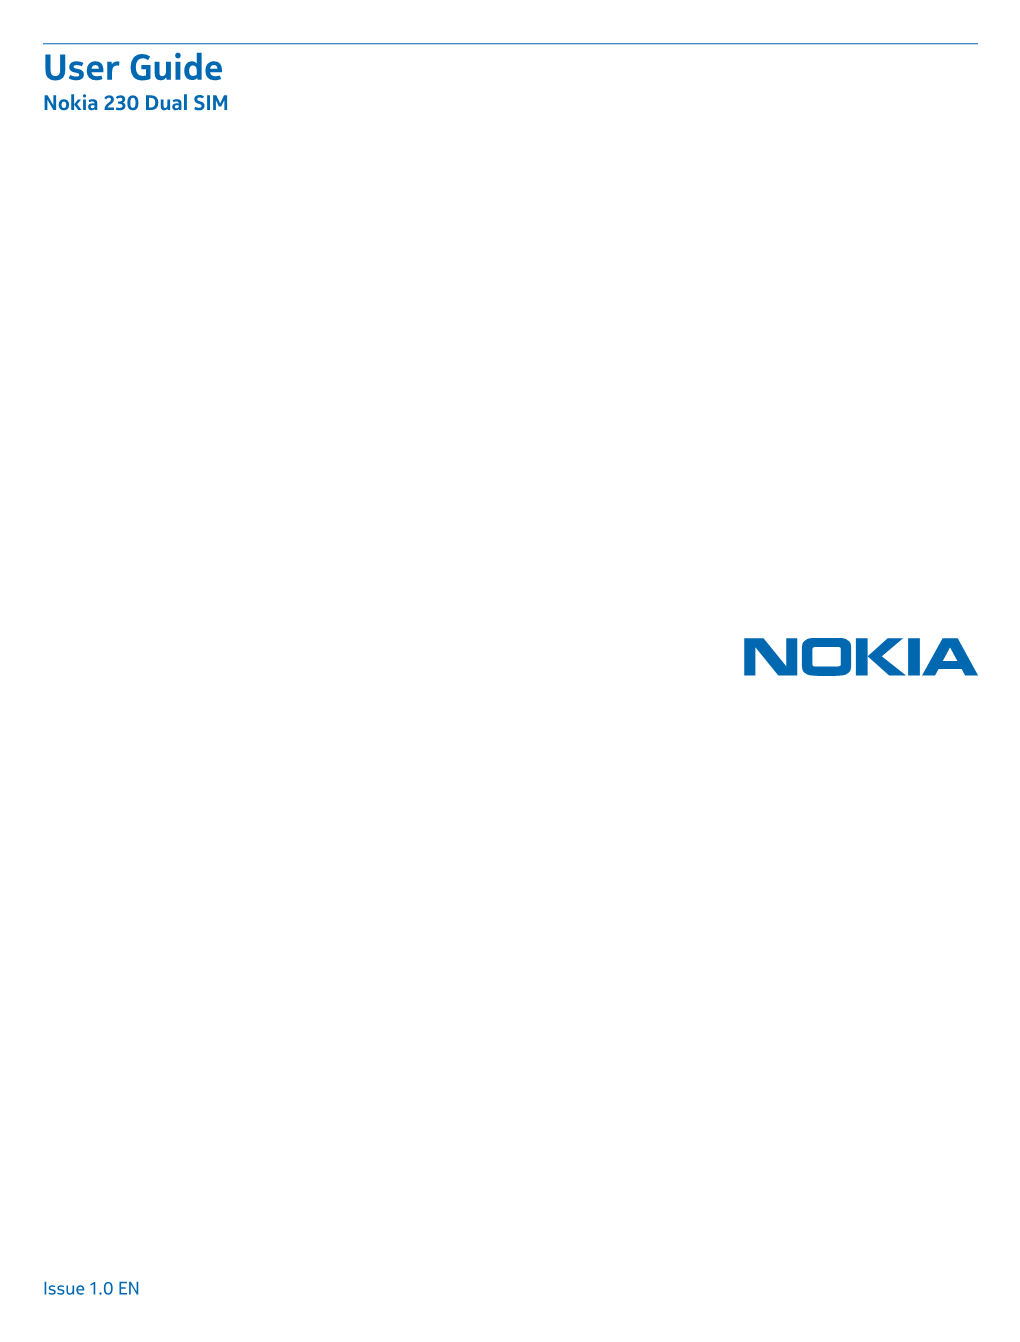 Nokia 230 Dual SIM User Guide